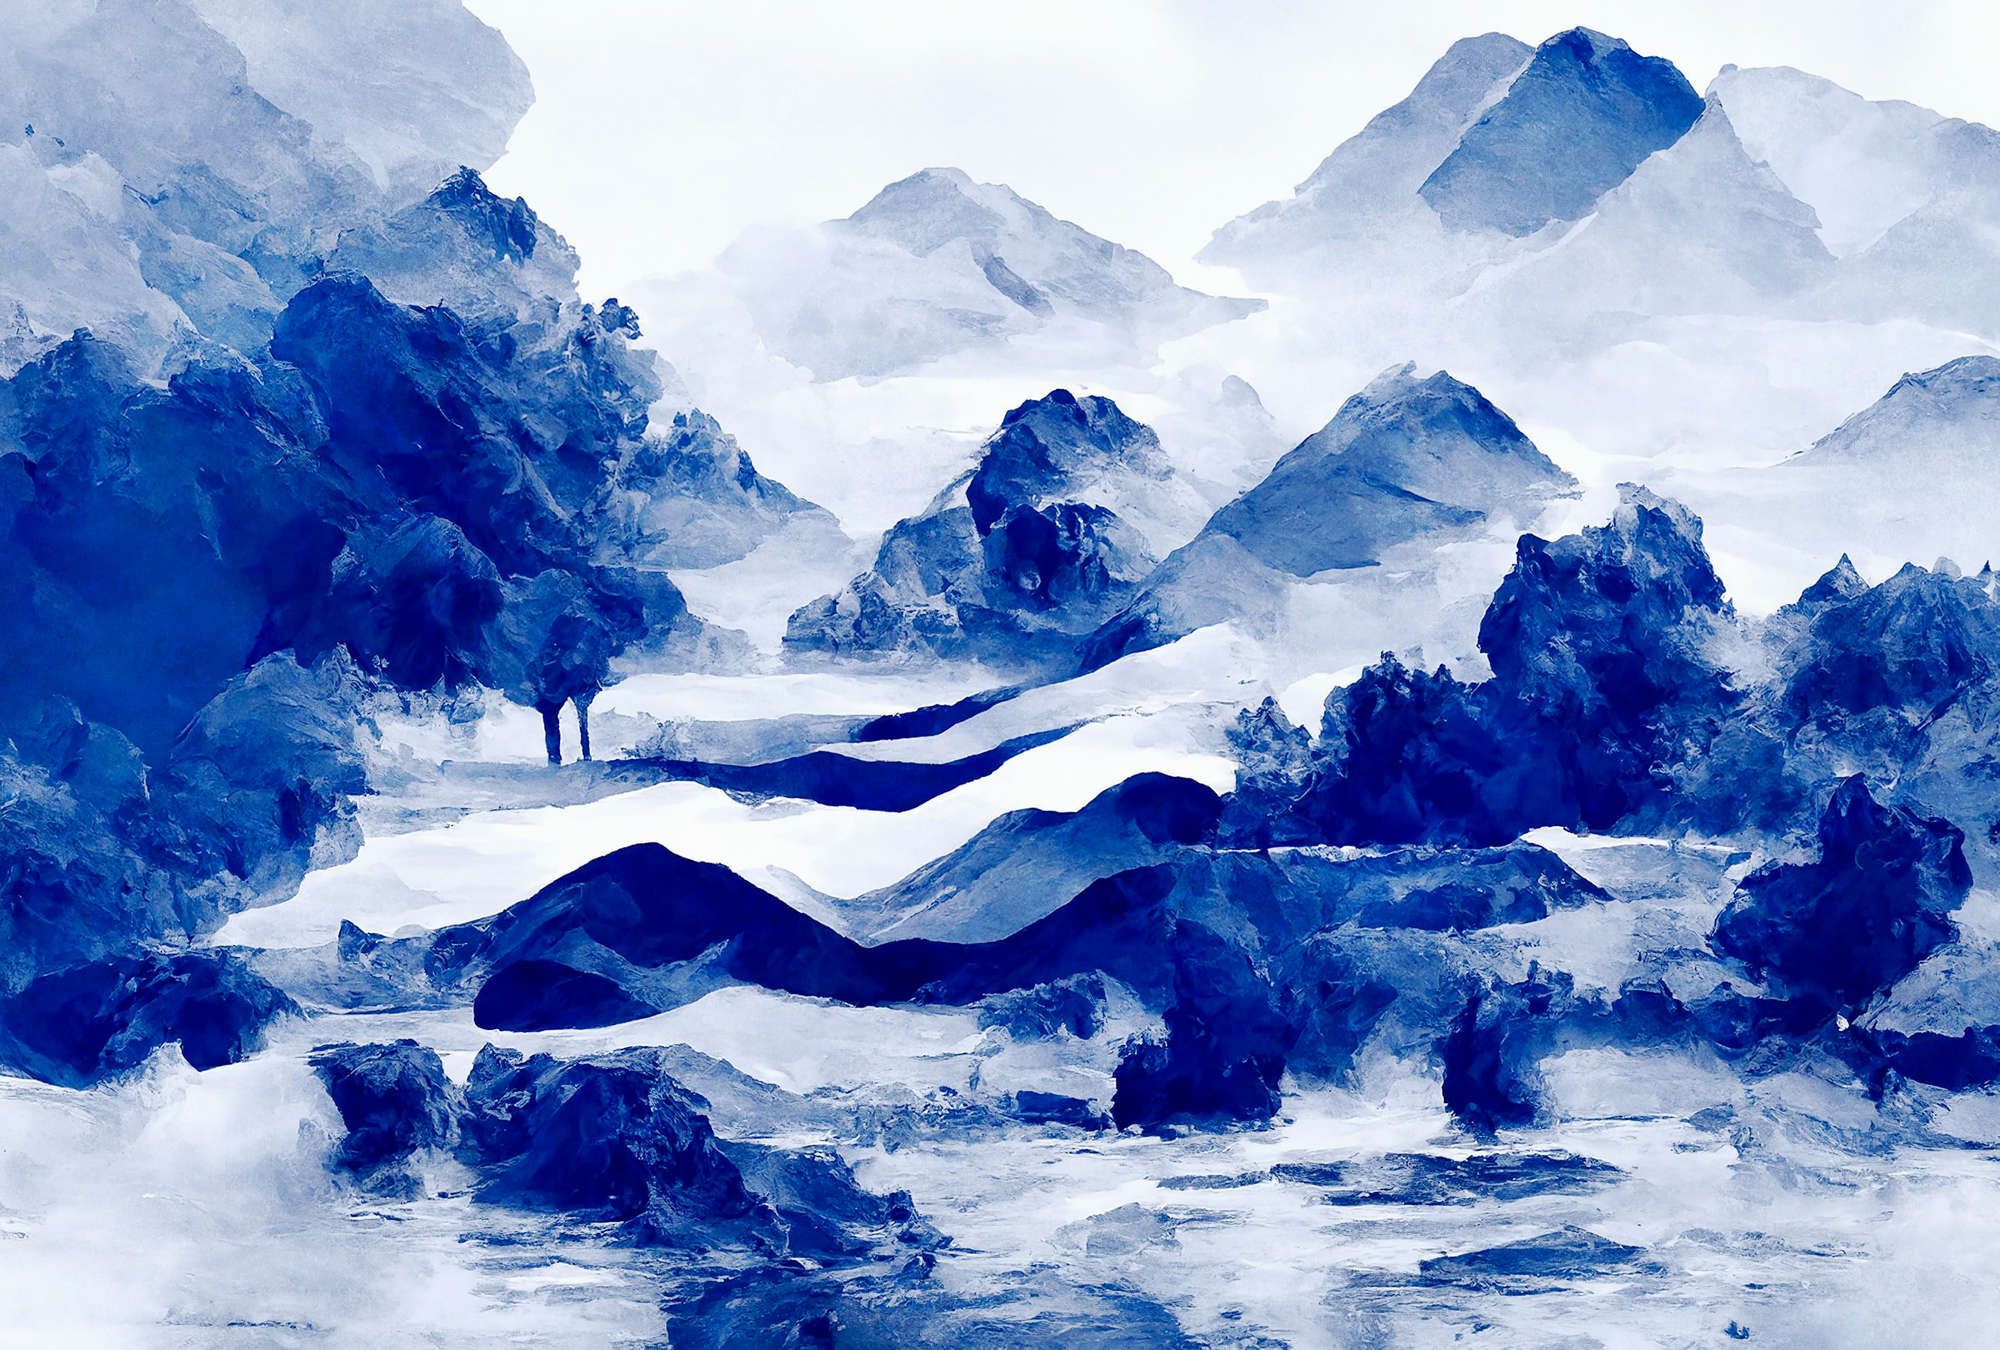             Digital behang »tinterra 3« - Landschap met bergen & mist - Blauw | Mat, Glad vlies
        